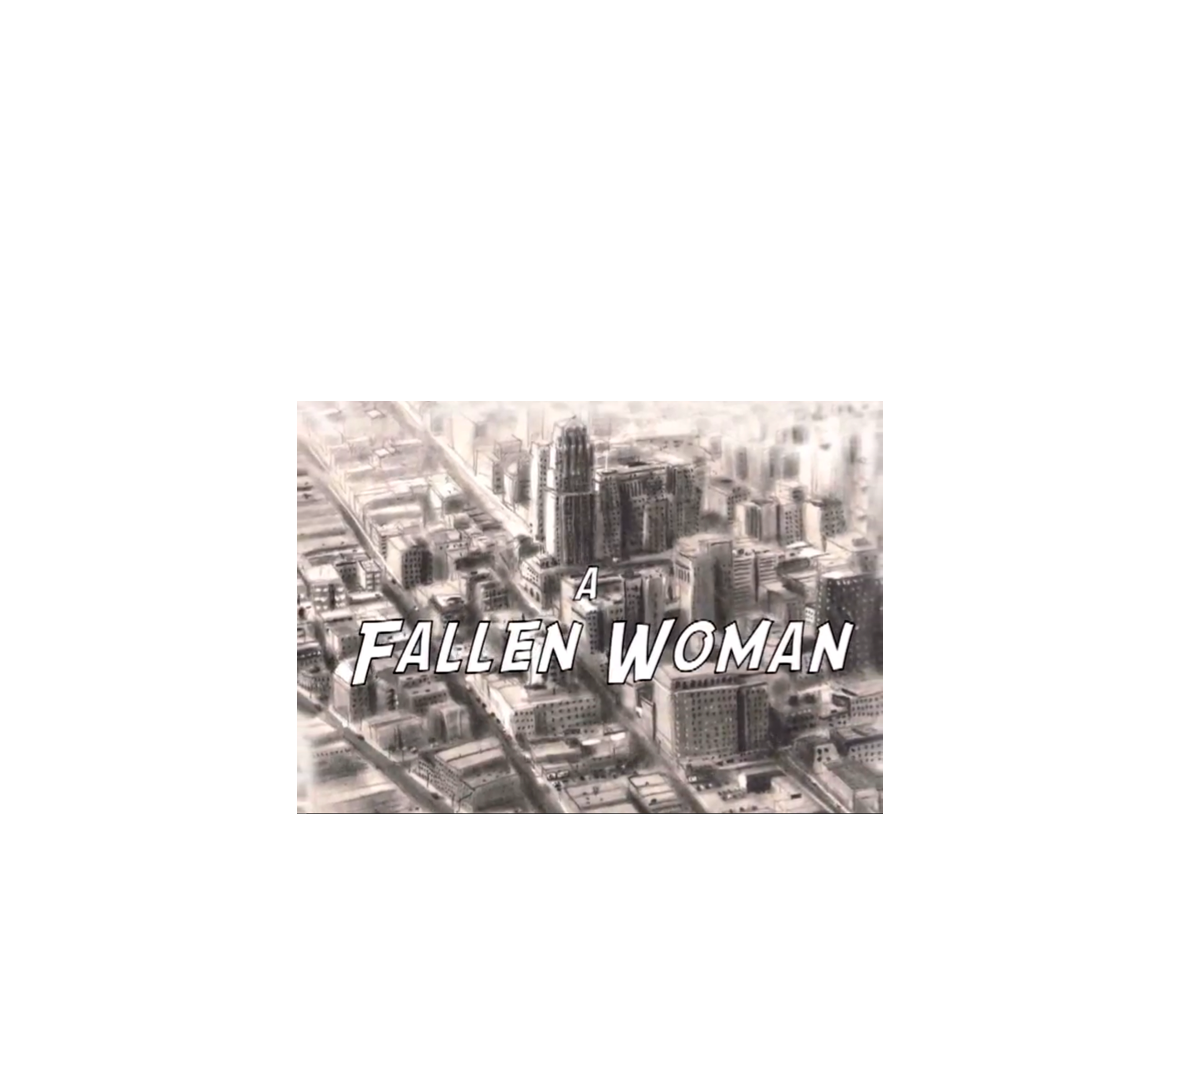   (Most recent first)  
 ‘A Fallen Woman’
A Ciné Noir Murder Mystery

￼

http://www.youtube.com/watch?v=k4SwkQZKX_I